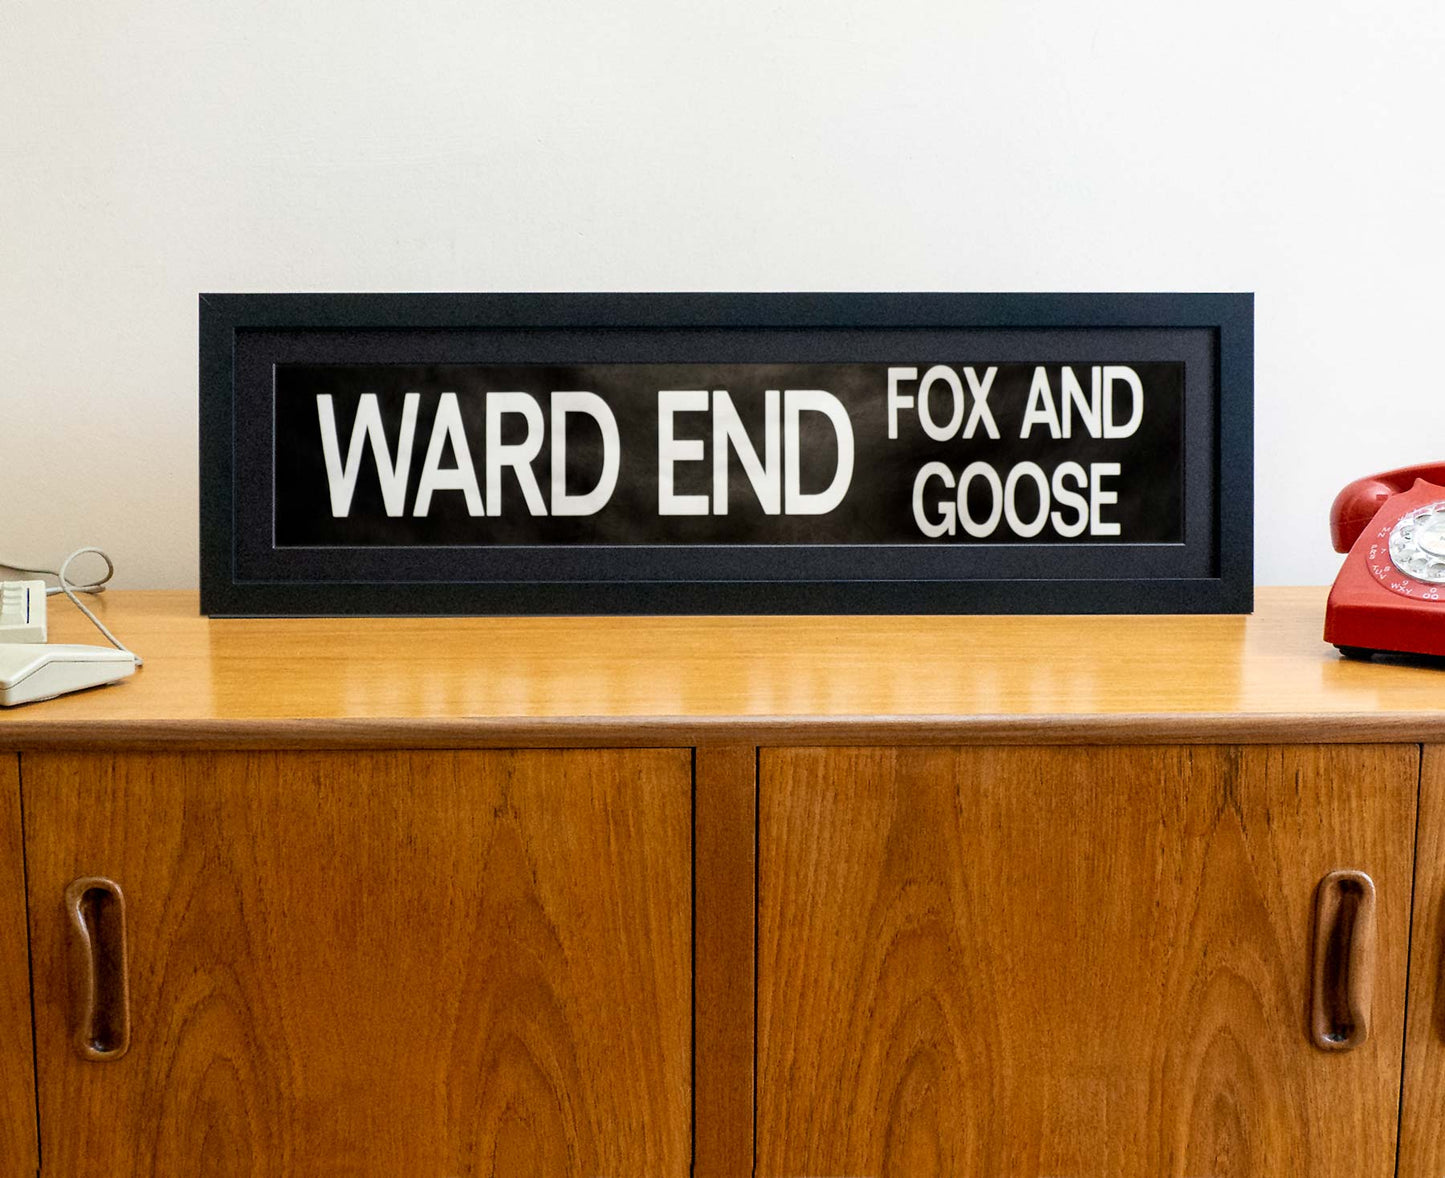 Ward End Fox and Goose 1990s framed original bus blind